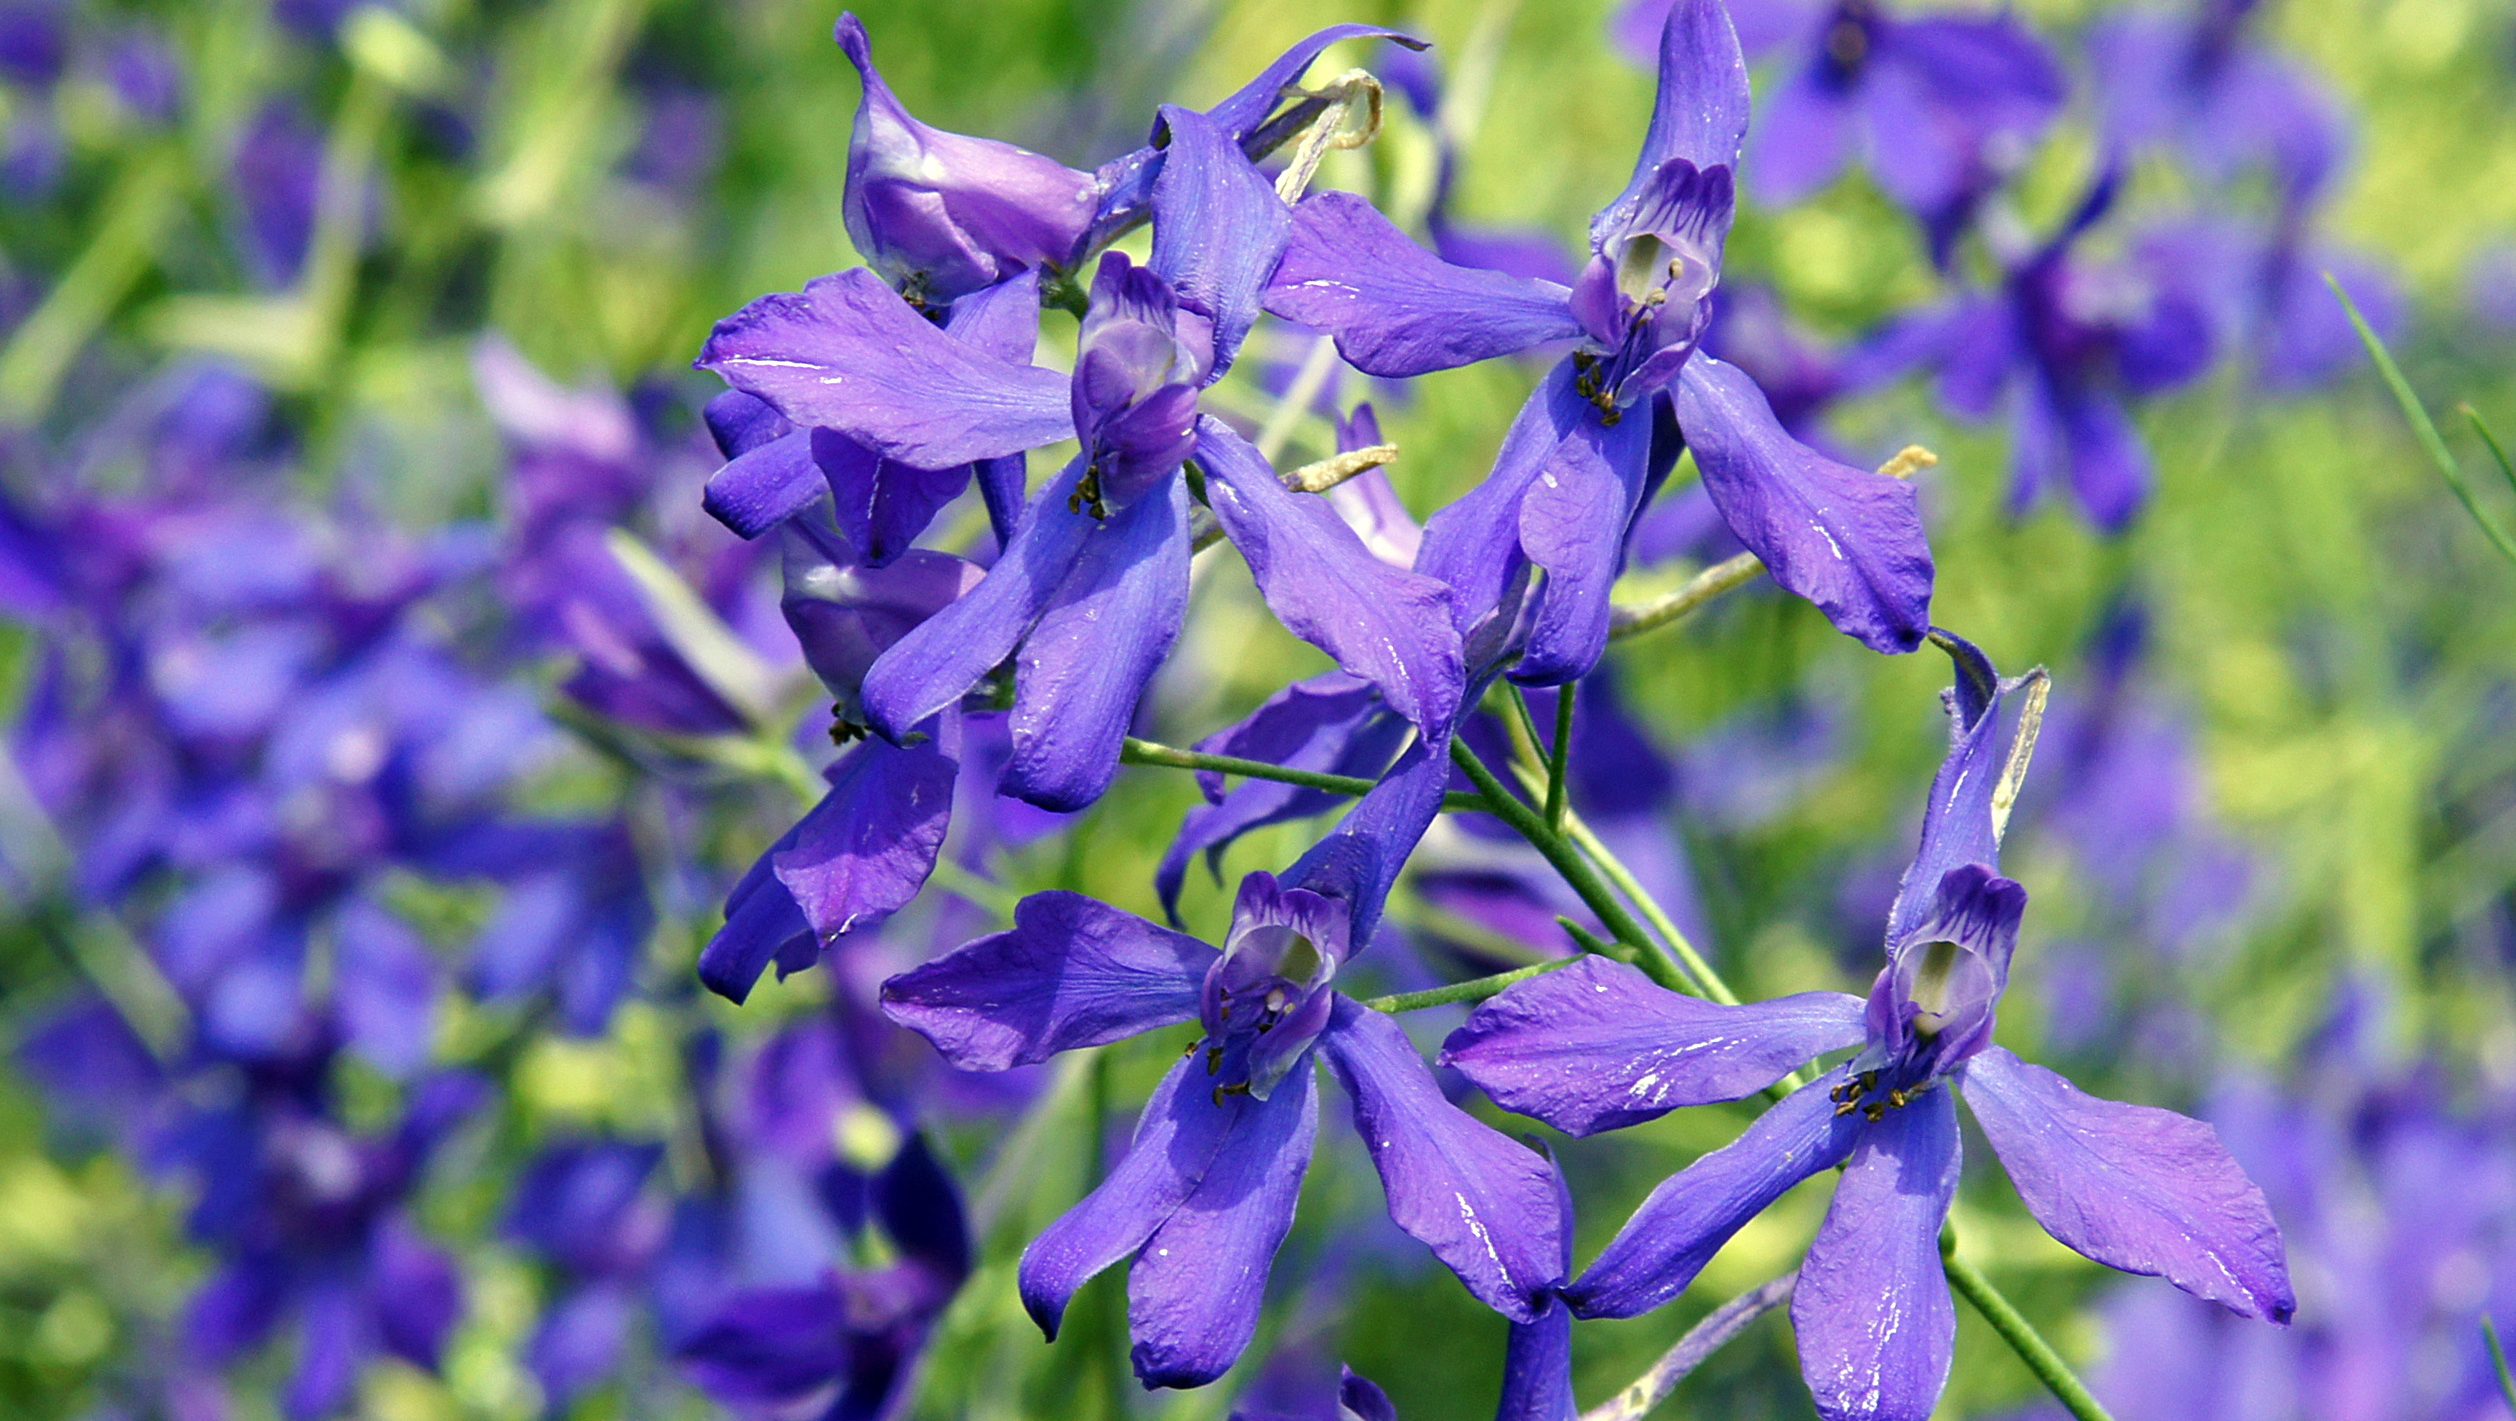 Forking larkspur blue flowers